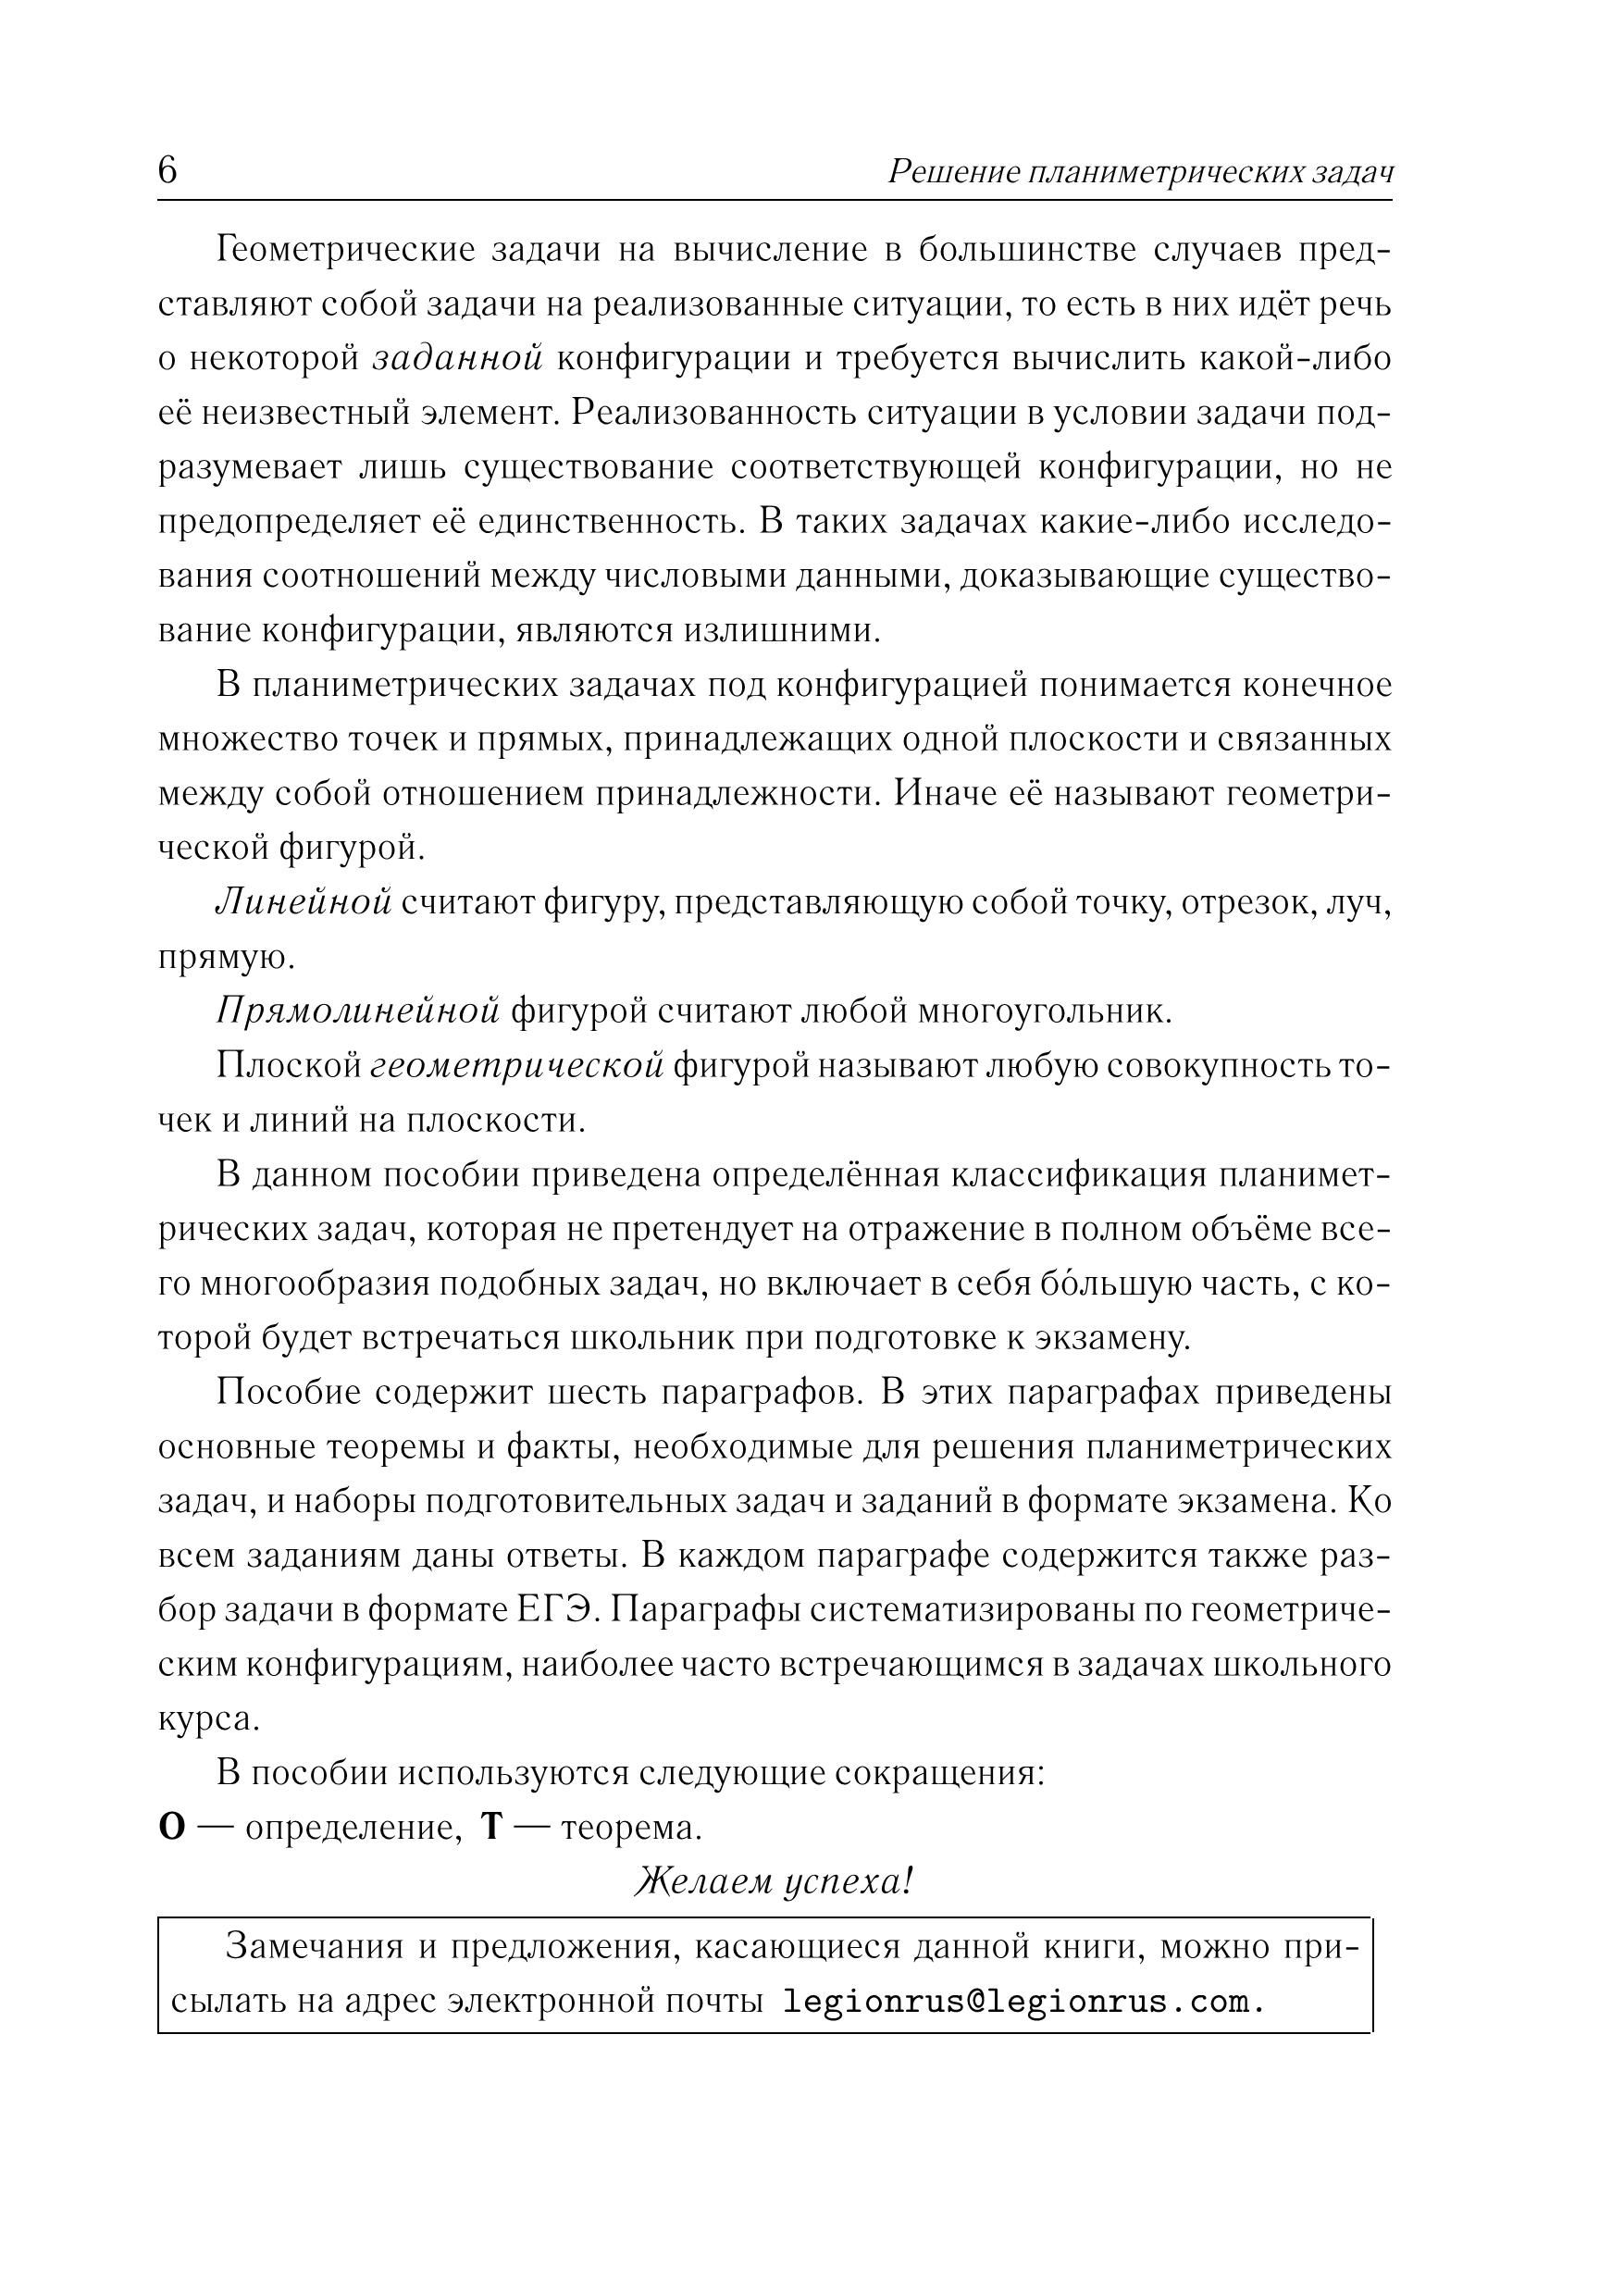 Математика. ЕГЭ. Решение планиметрических задач (задание 16). 3-е изд.